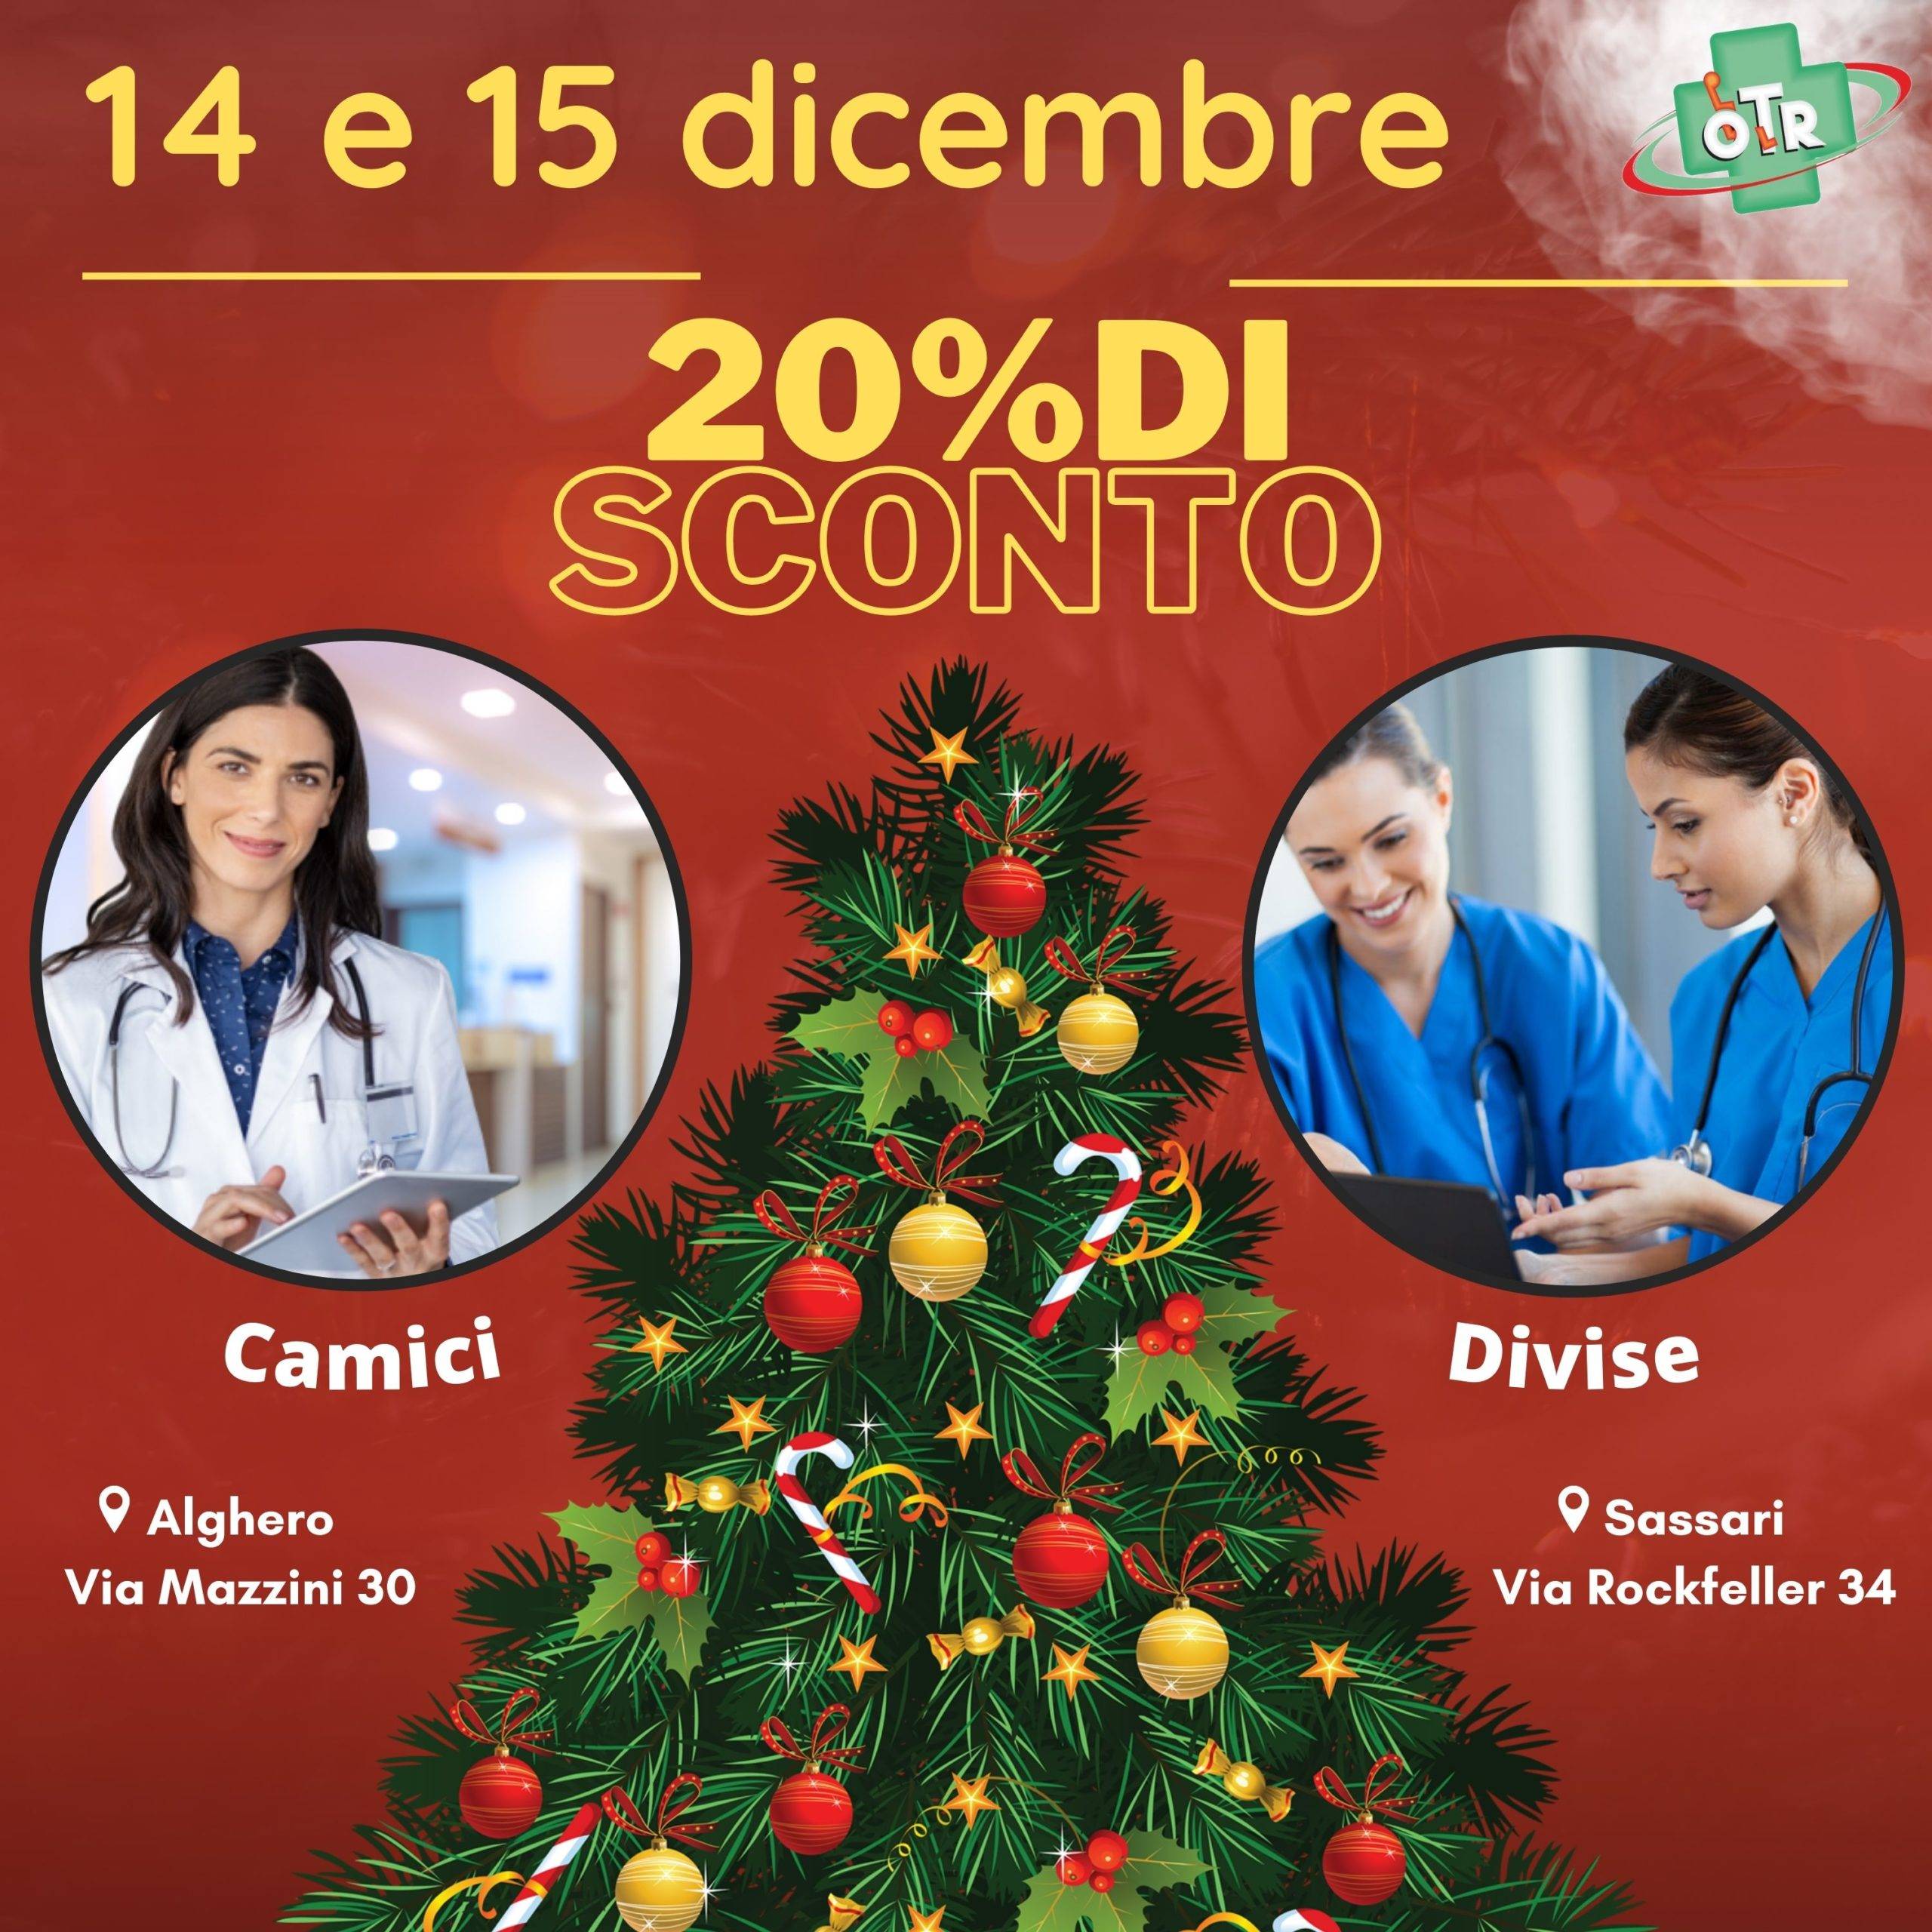 OTR ORTOPEDIA - Calendario dell'avvento - Promozione natalizia - 14 e 15 dicembre - 20% di sconto